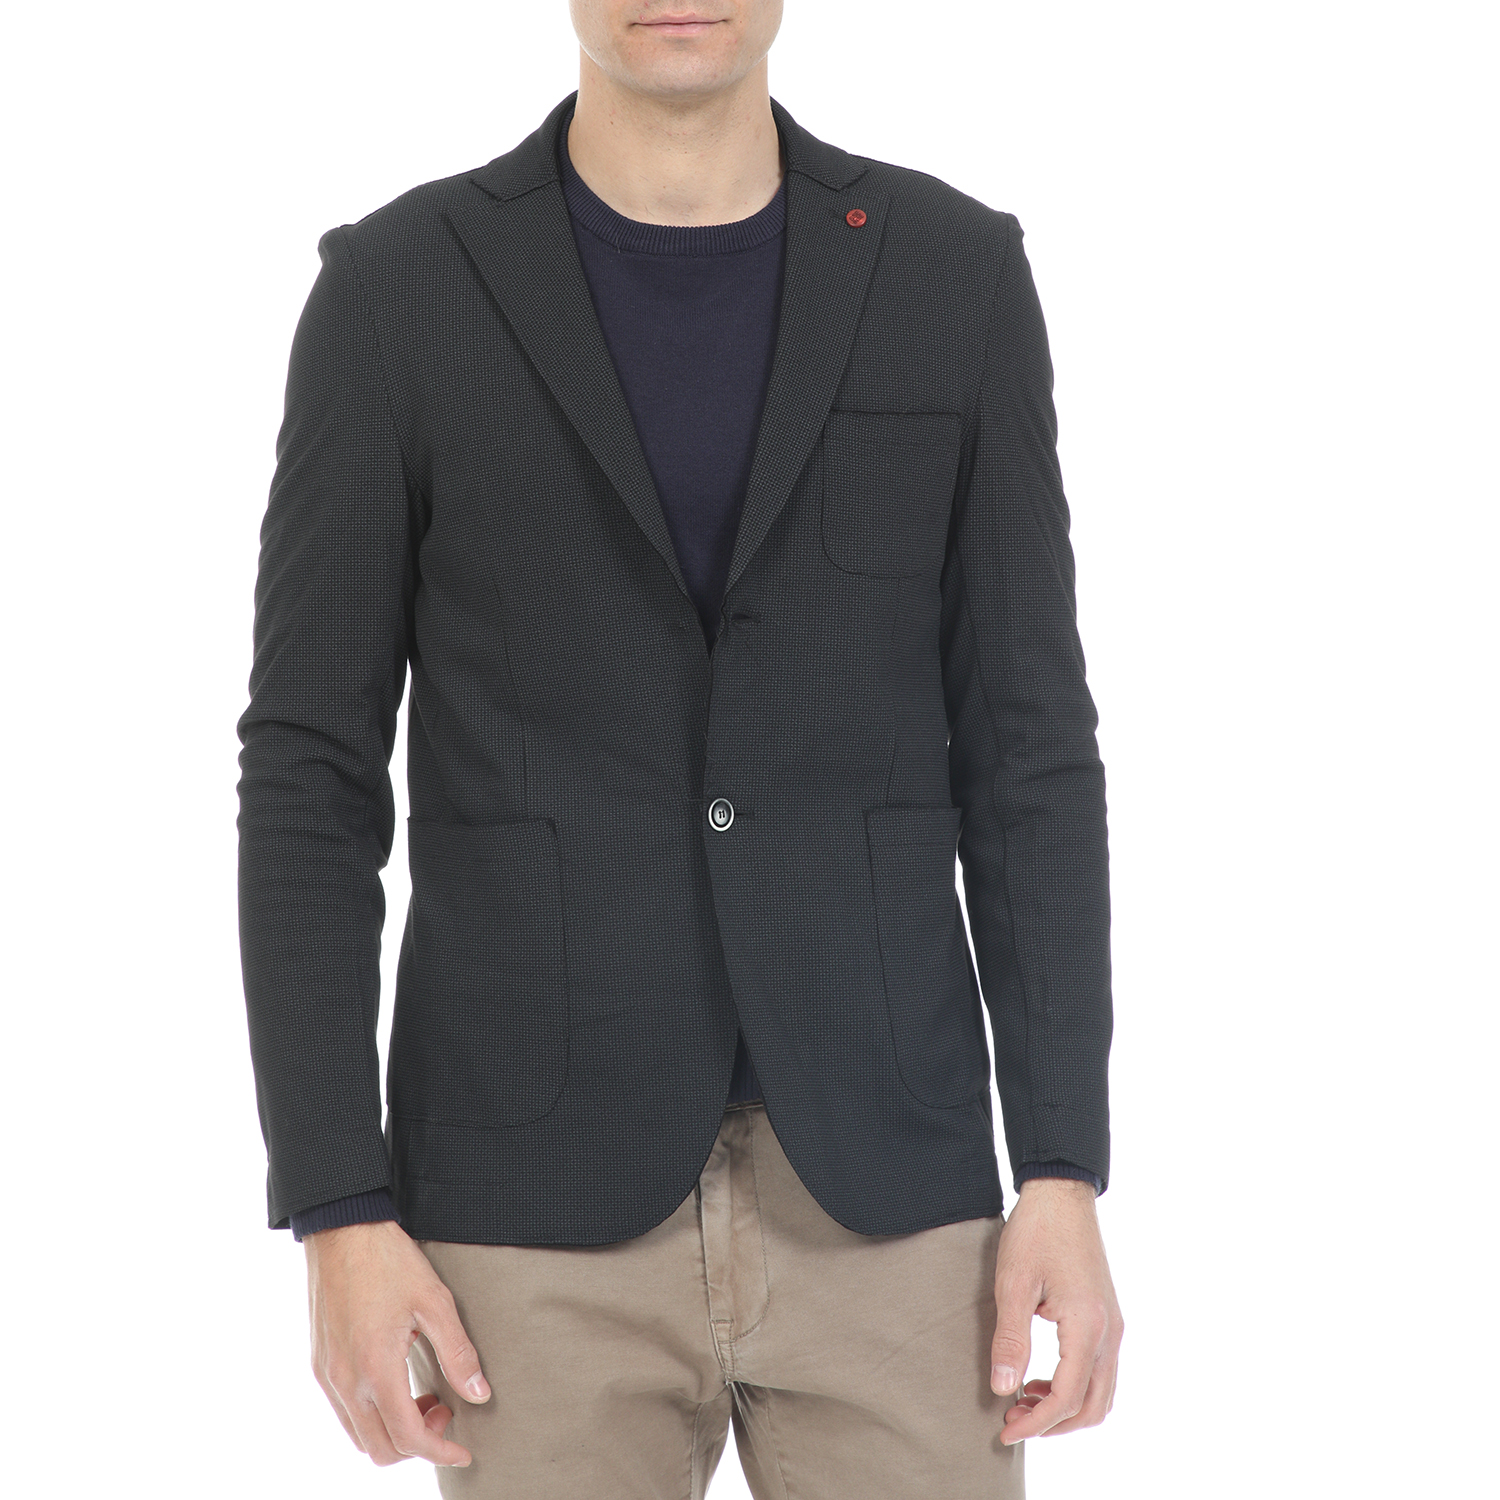 Ανδρικά/Ρούχα/Πανωφόρια/Σακάκια SSEINSE - Ανδρικό σακάκι SSEINSE μαύρο